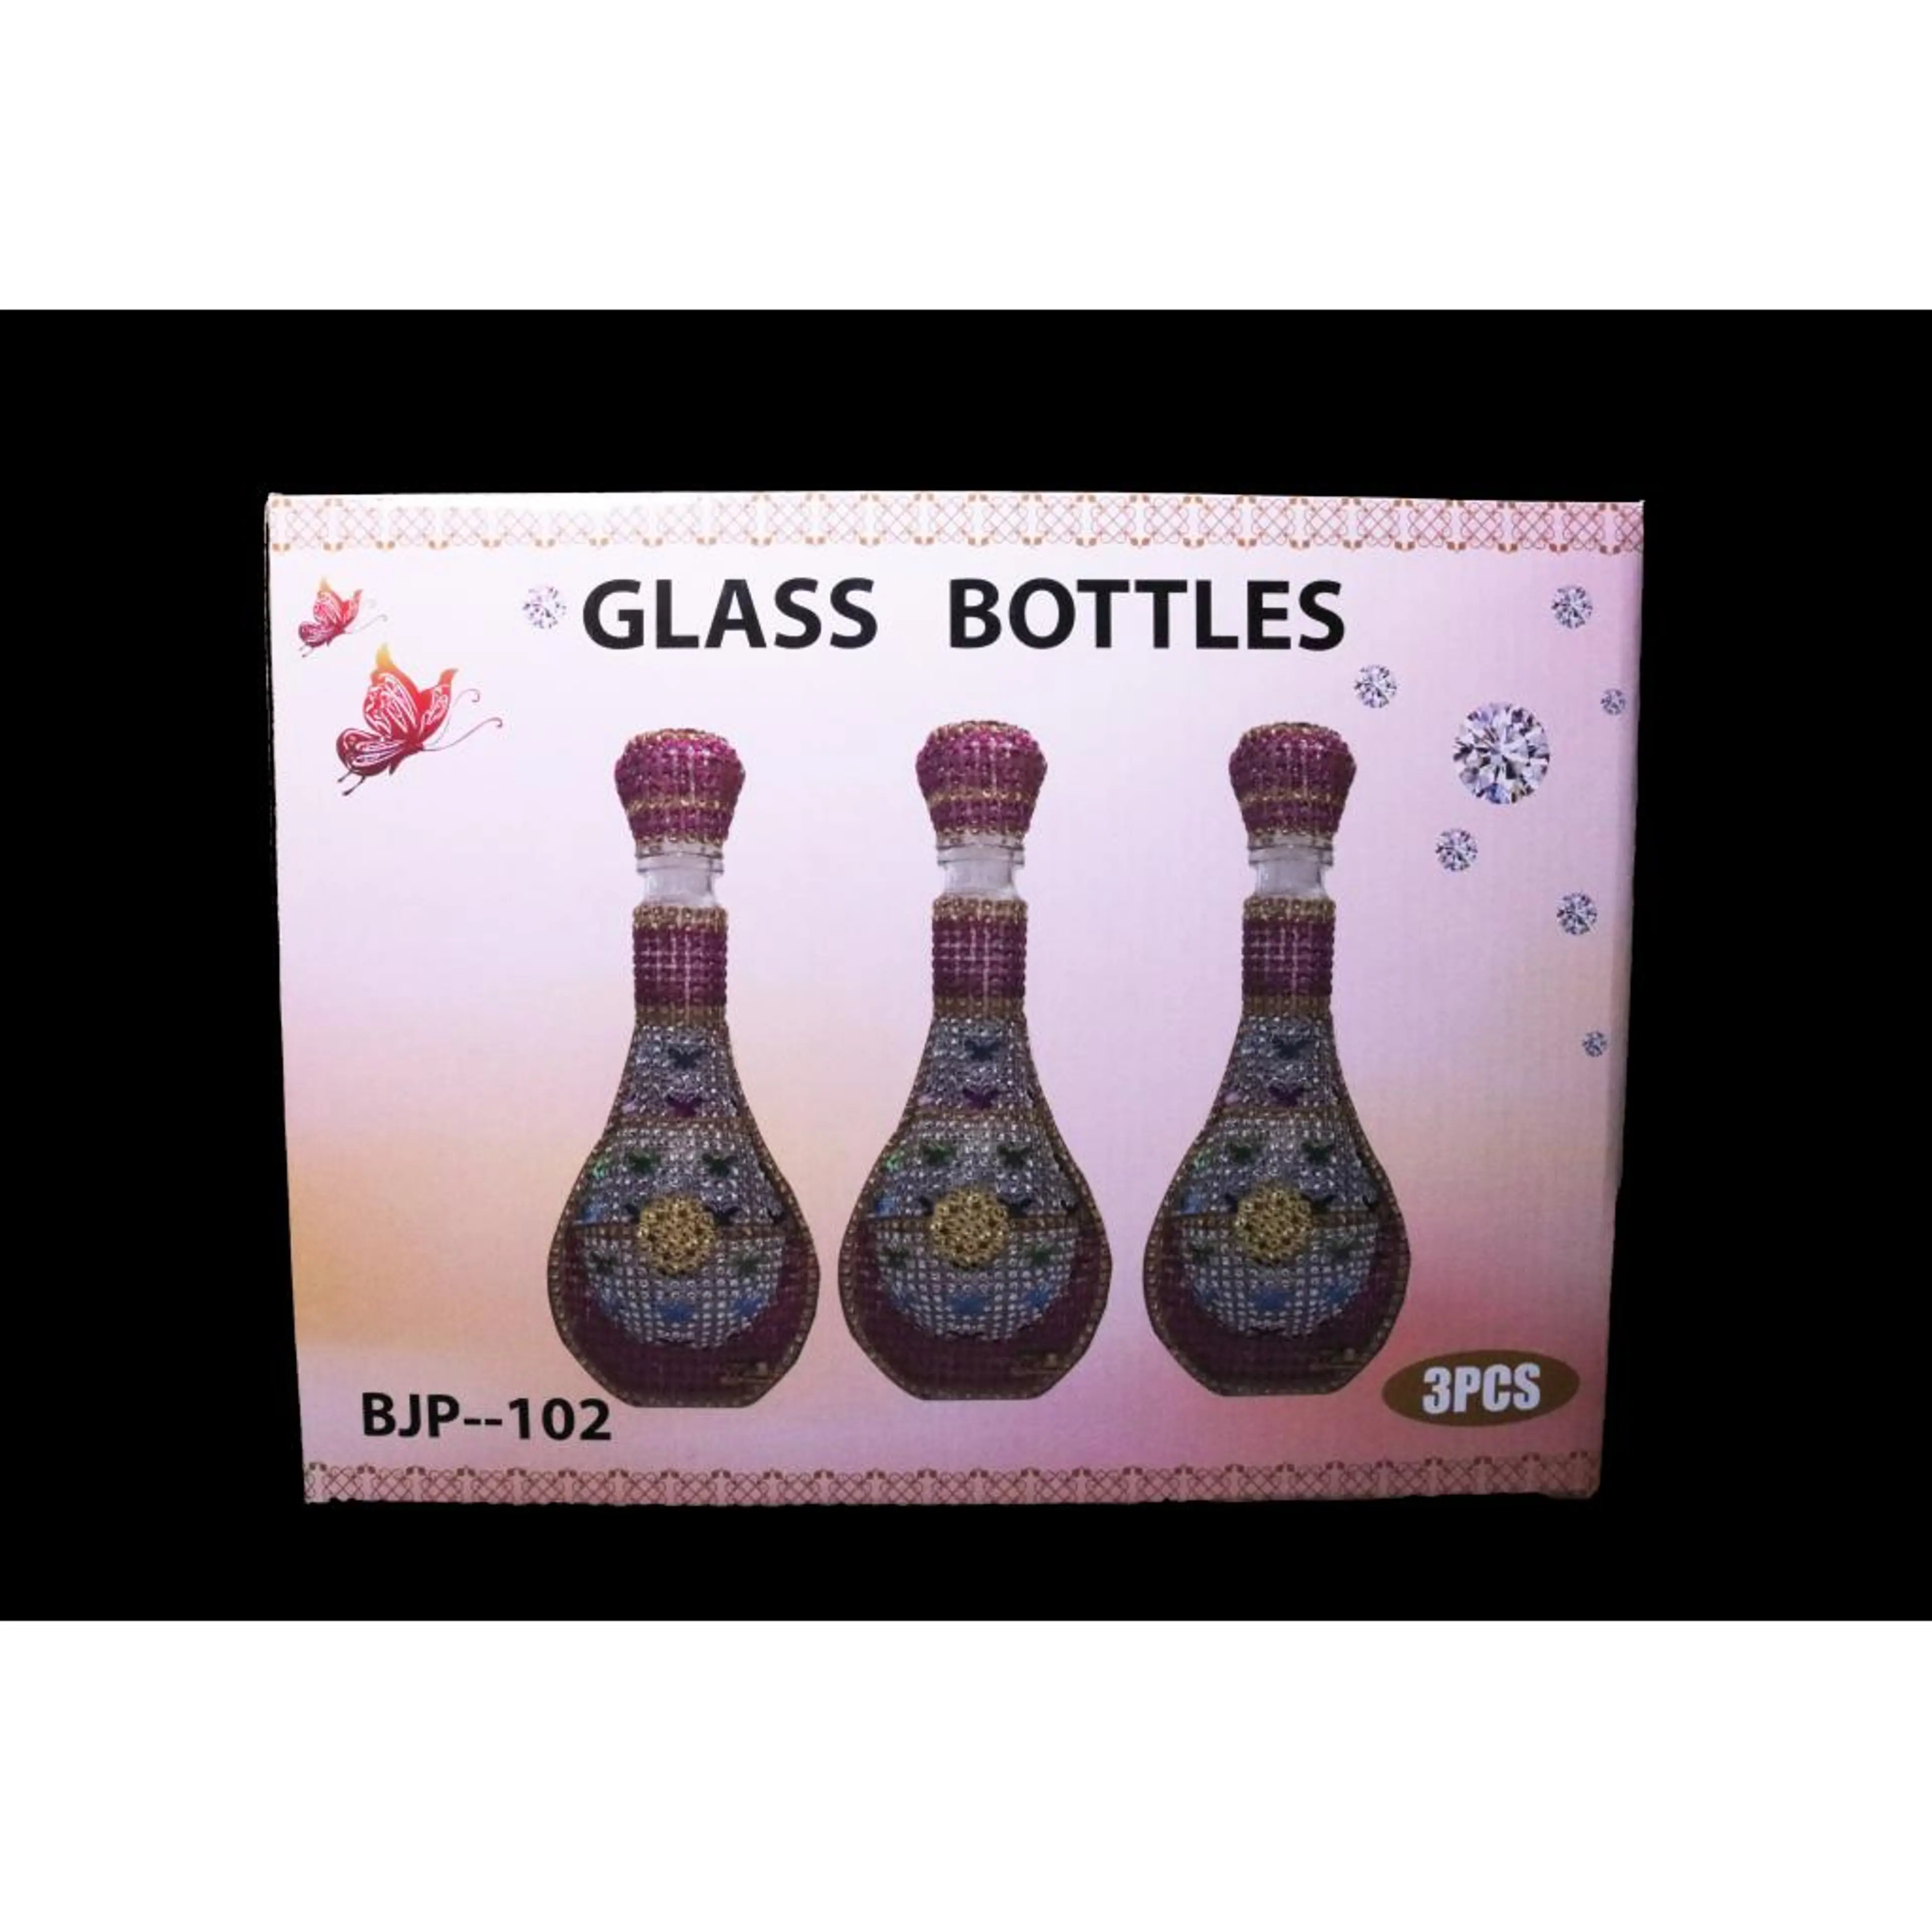 Glass Bottles set of 3